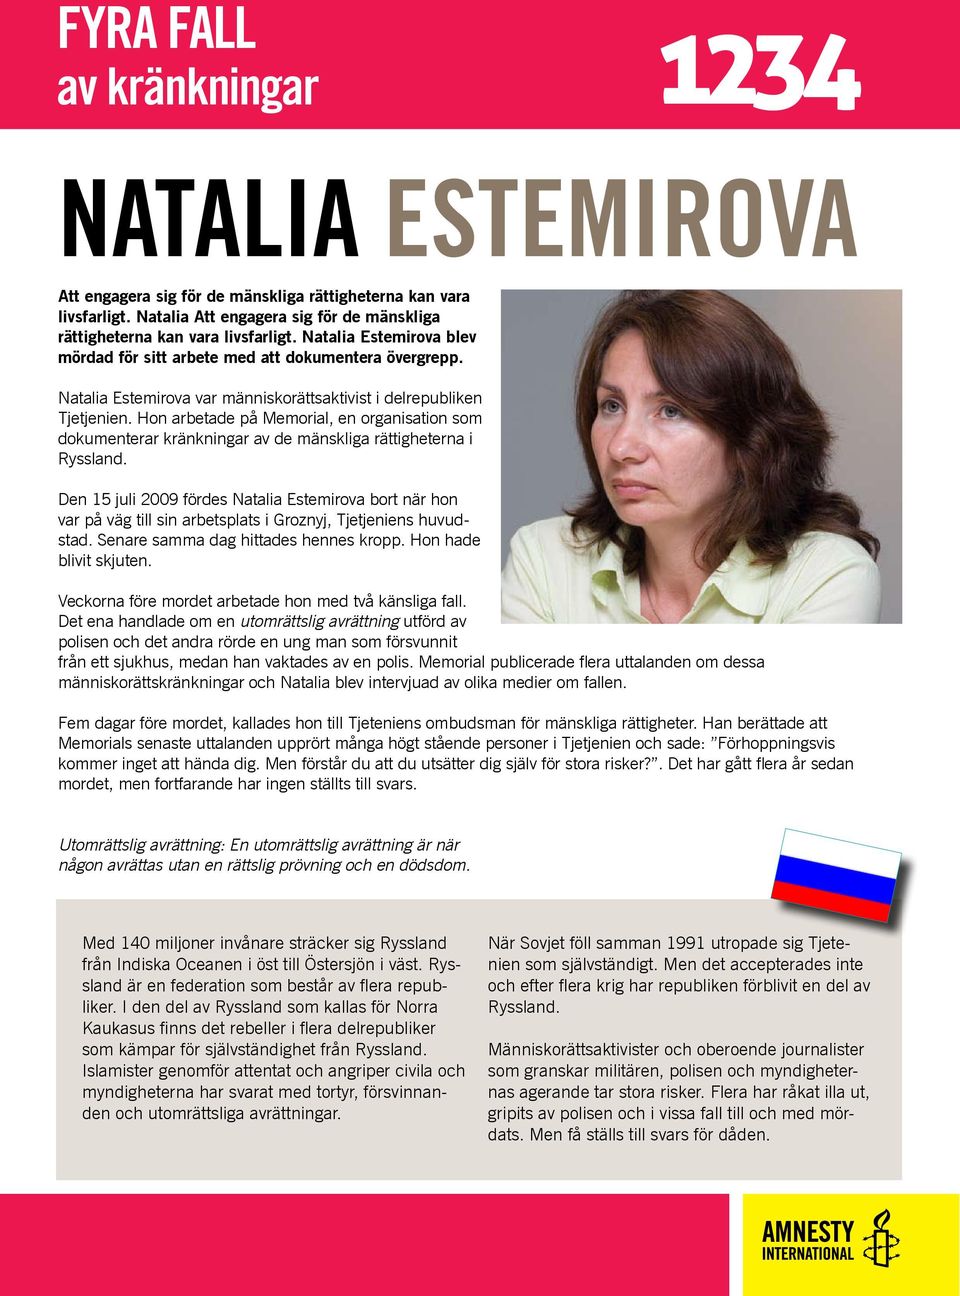 Hon arbetade på Memorial, en organisation som dokumenterar kränkningar av de mänskliga rättigheterna i Ryssland.